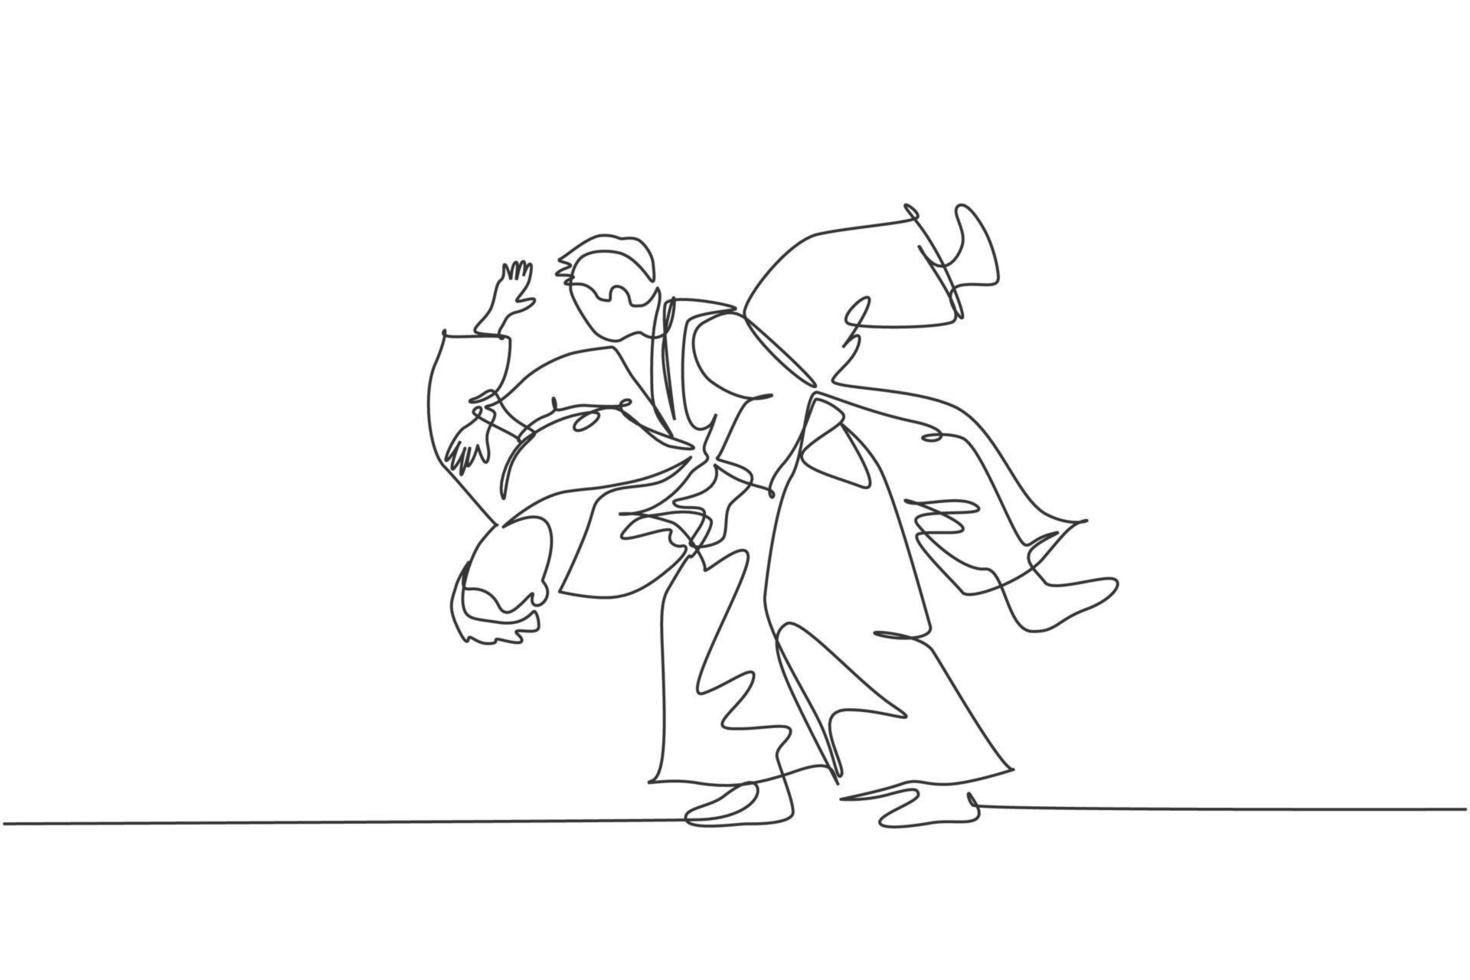 disegno a linea continua di due giovani sportivi che indossano il kimono praticano lo slamming nella tecnica di combattimento dell'aikido. concetto di arte marziale giapponese. illustrazione vettoriale di design alla moda con una linea di disegno